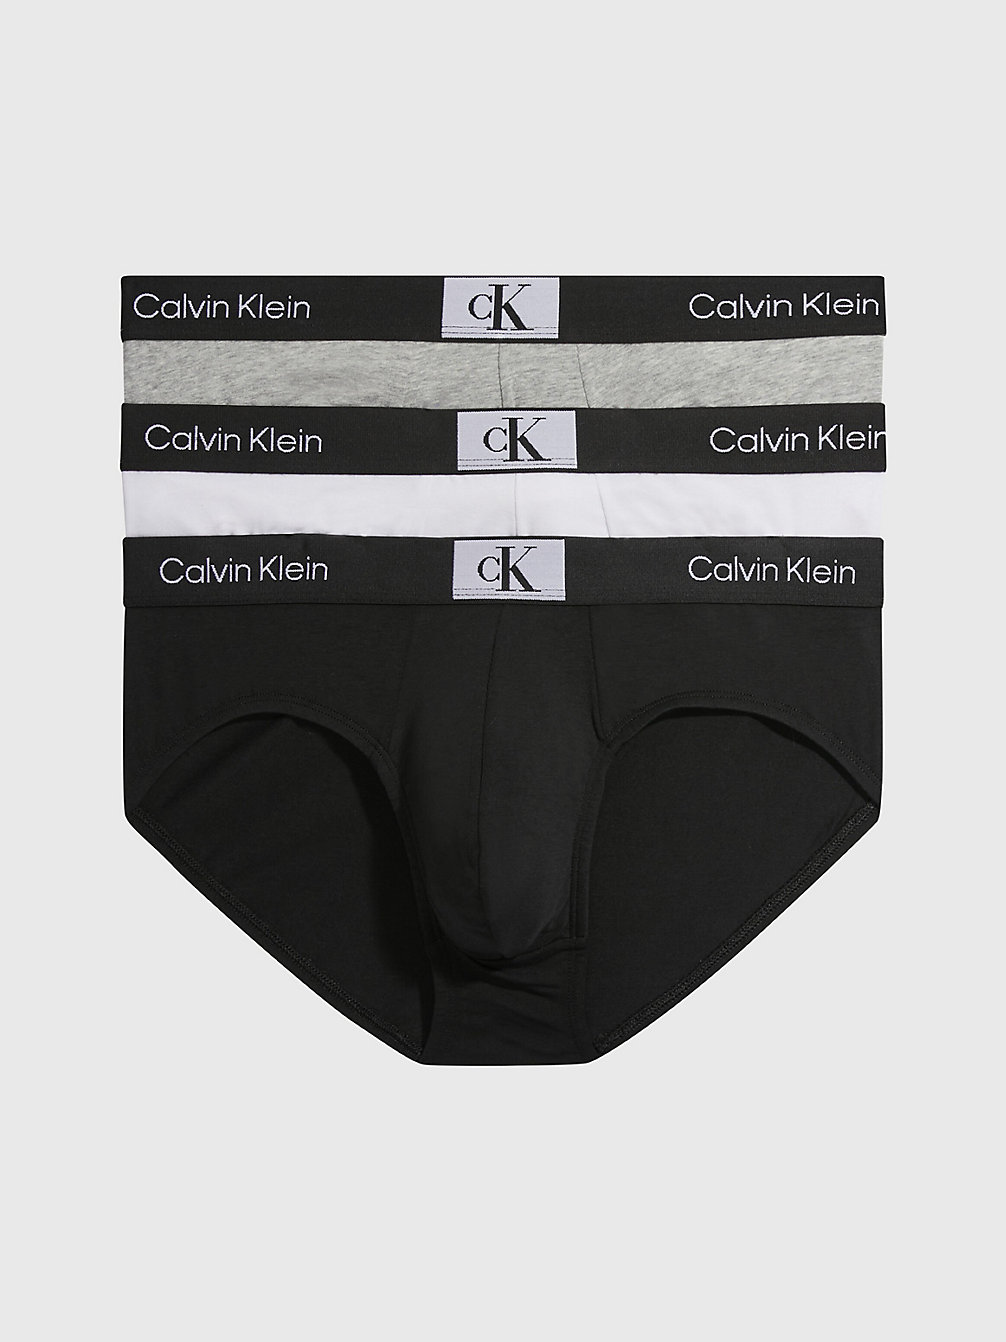 BLACK/WHITE/GREY HEATHER 3-Pack Slips - Ck96 undefined heren Calvin Klein